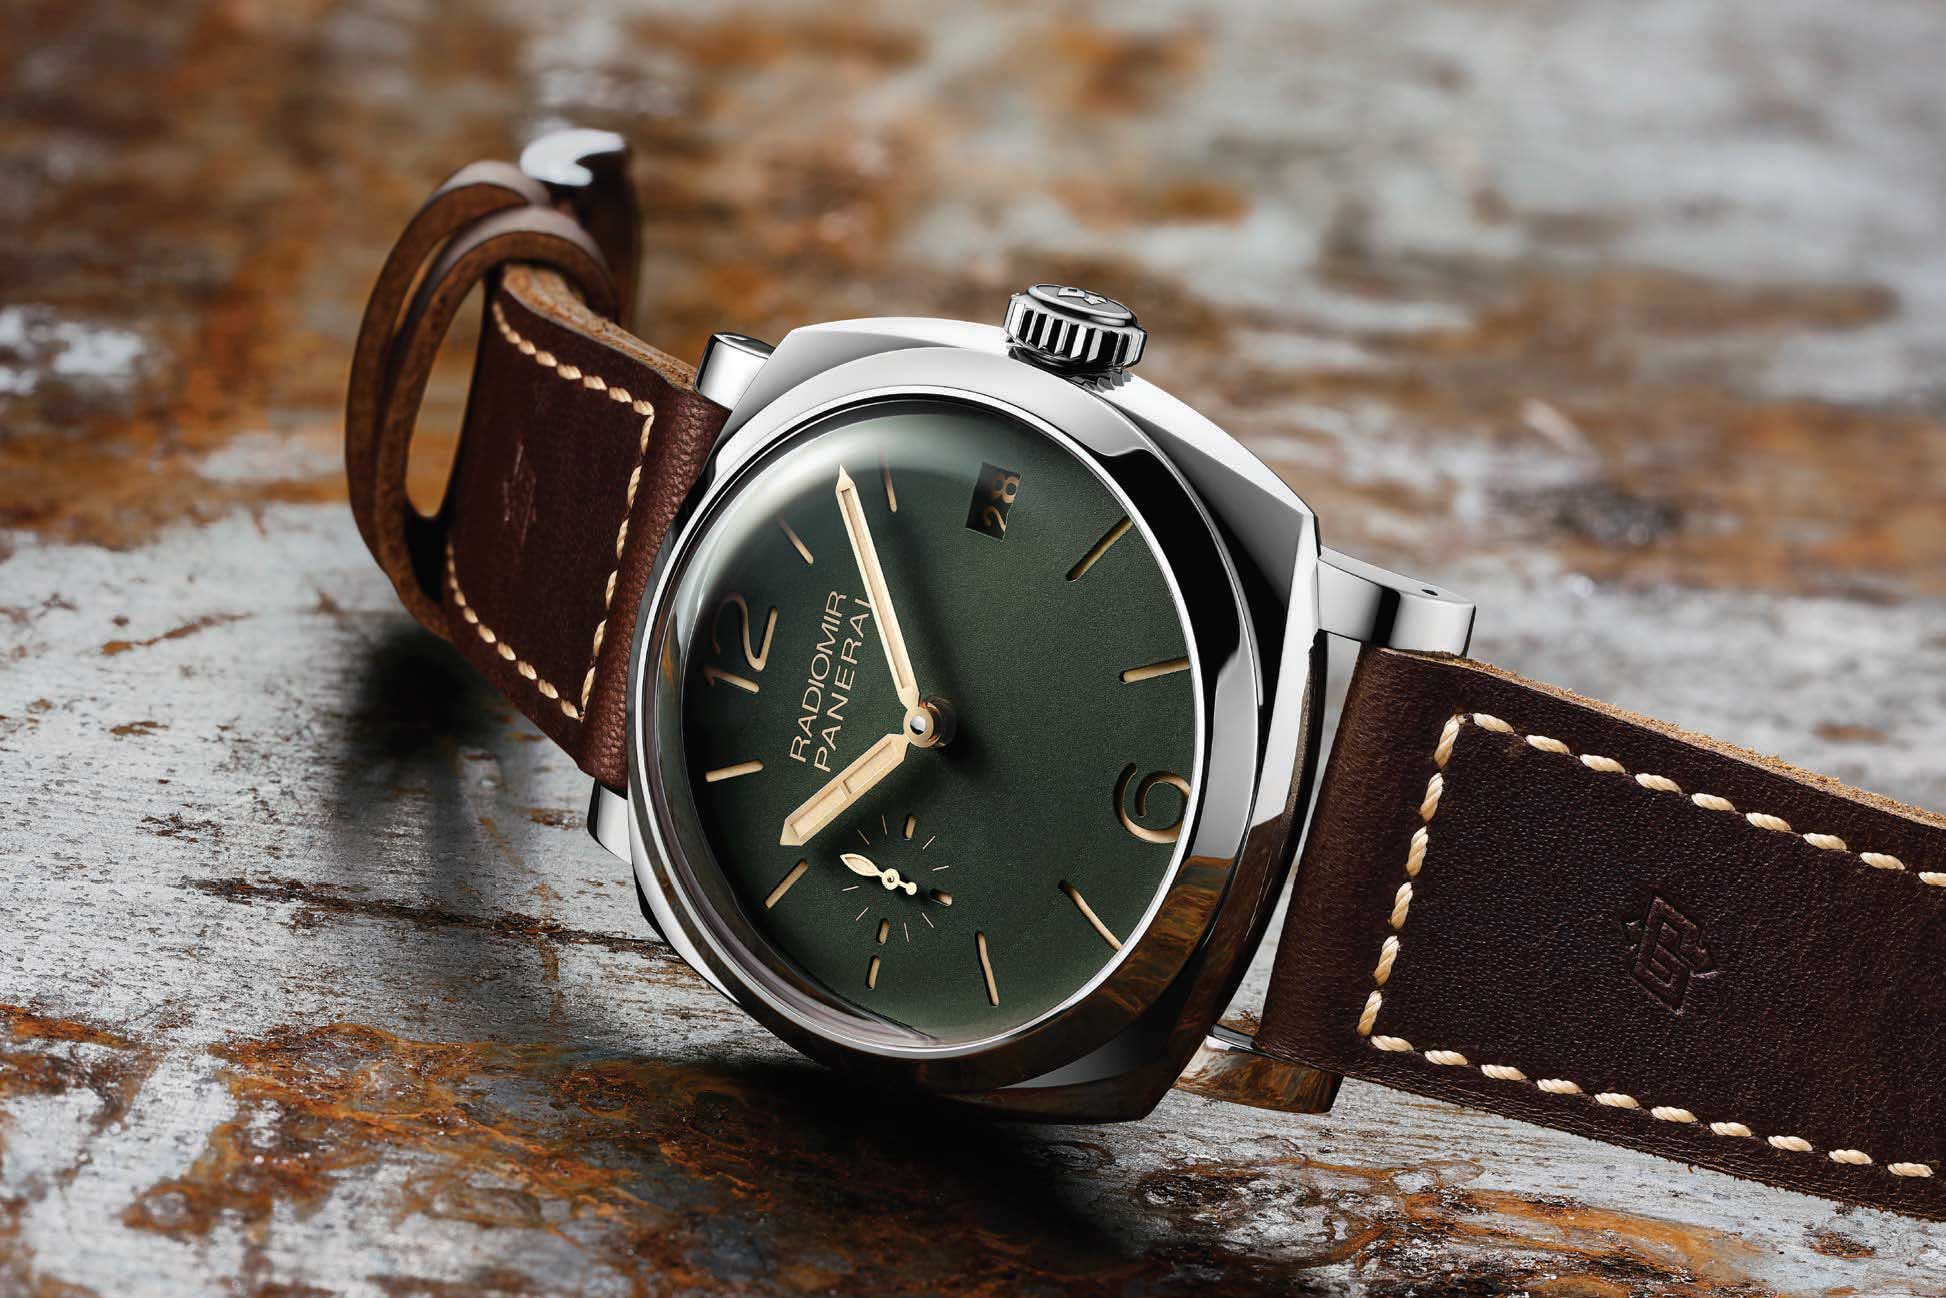 Panerai 推出全新軍綠錶盤限量系列